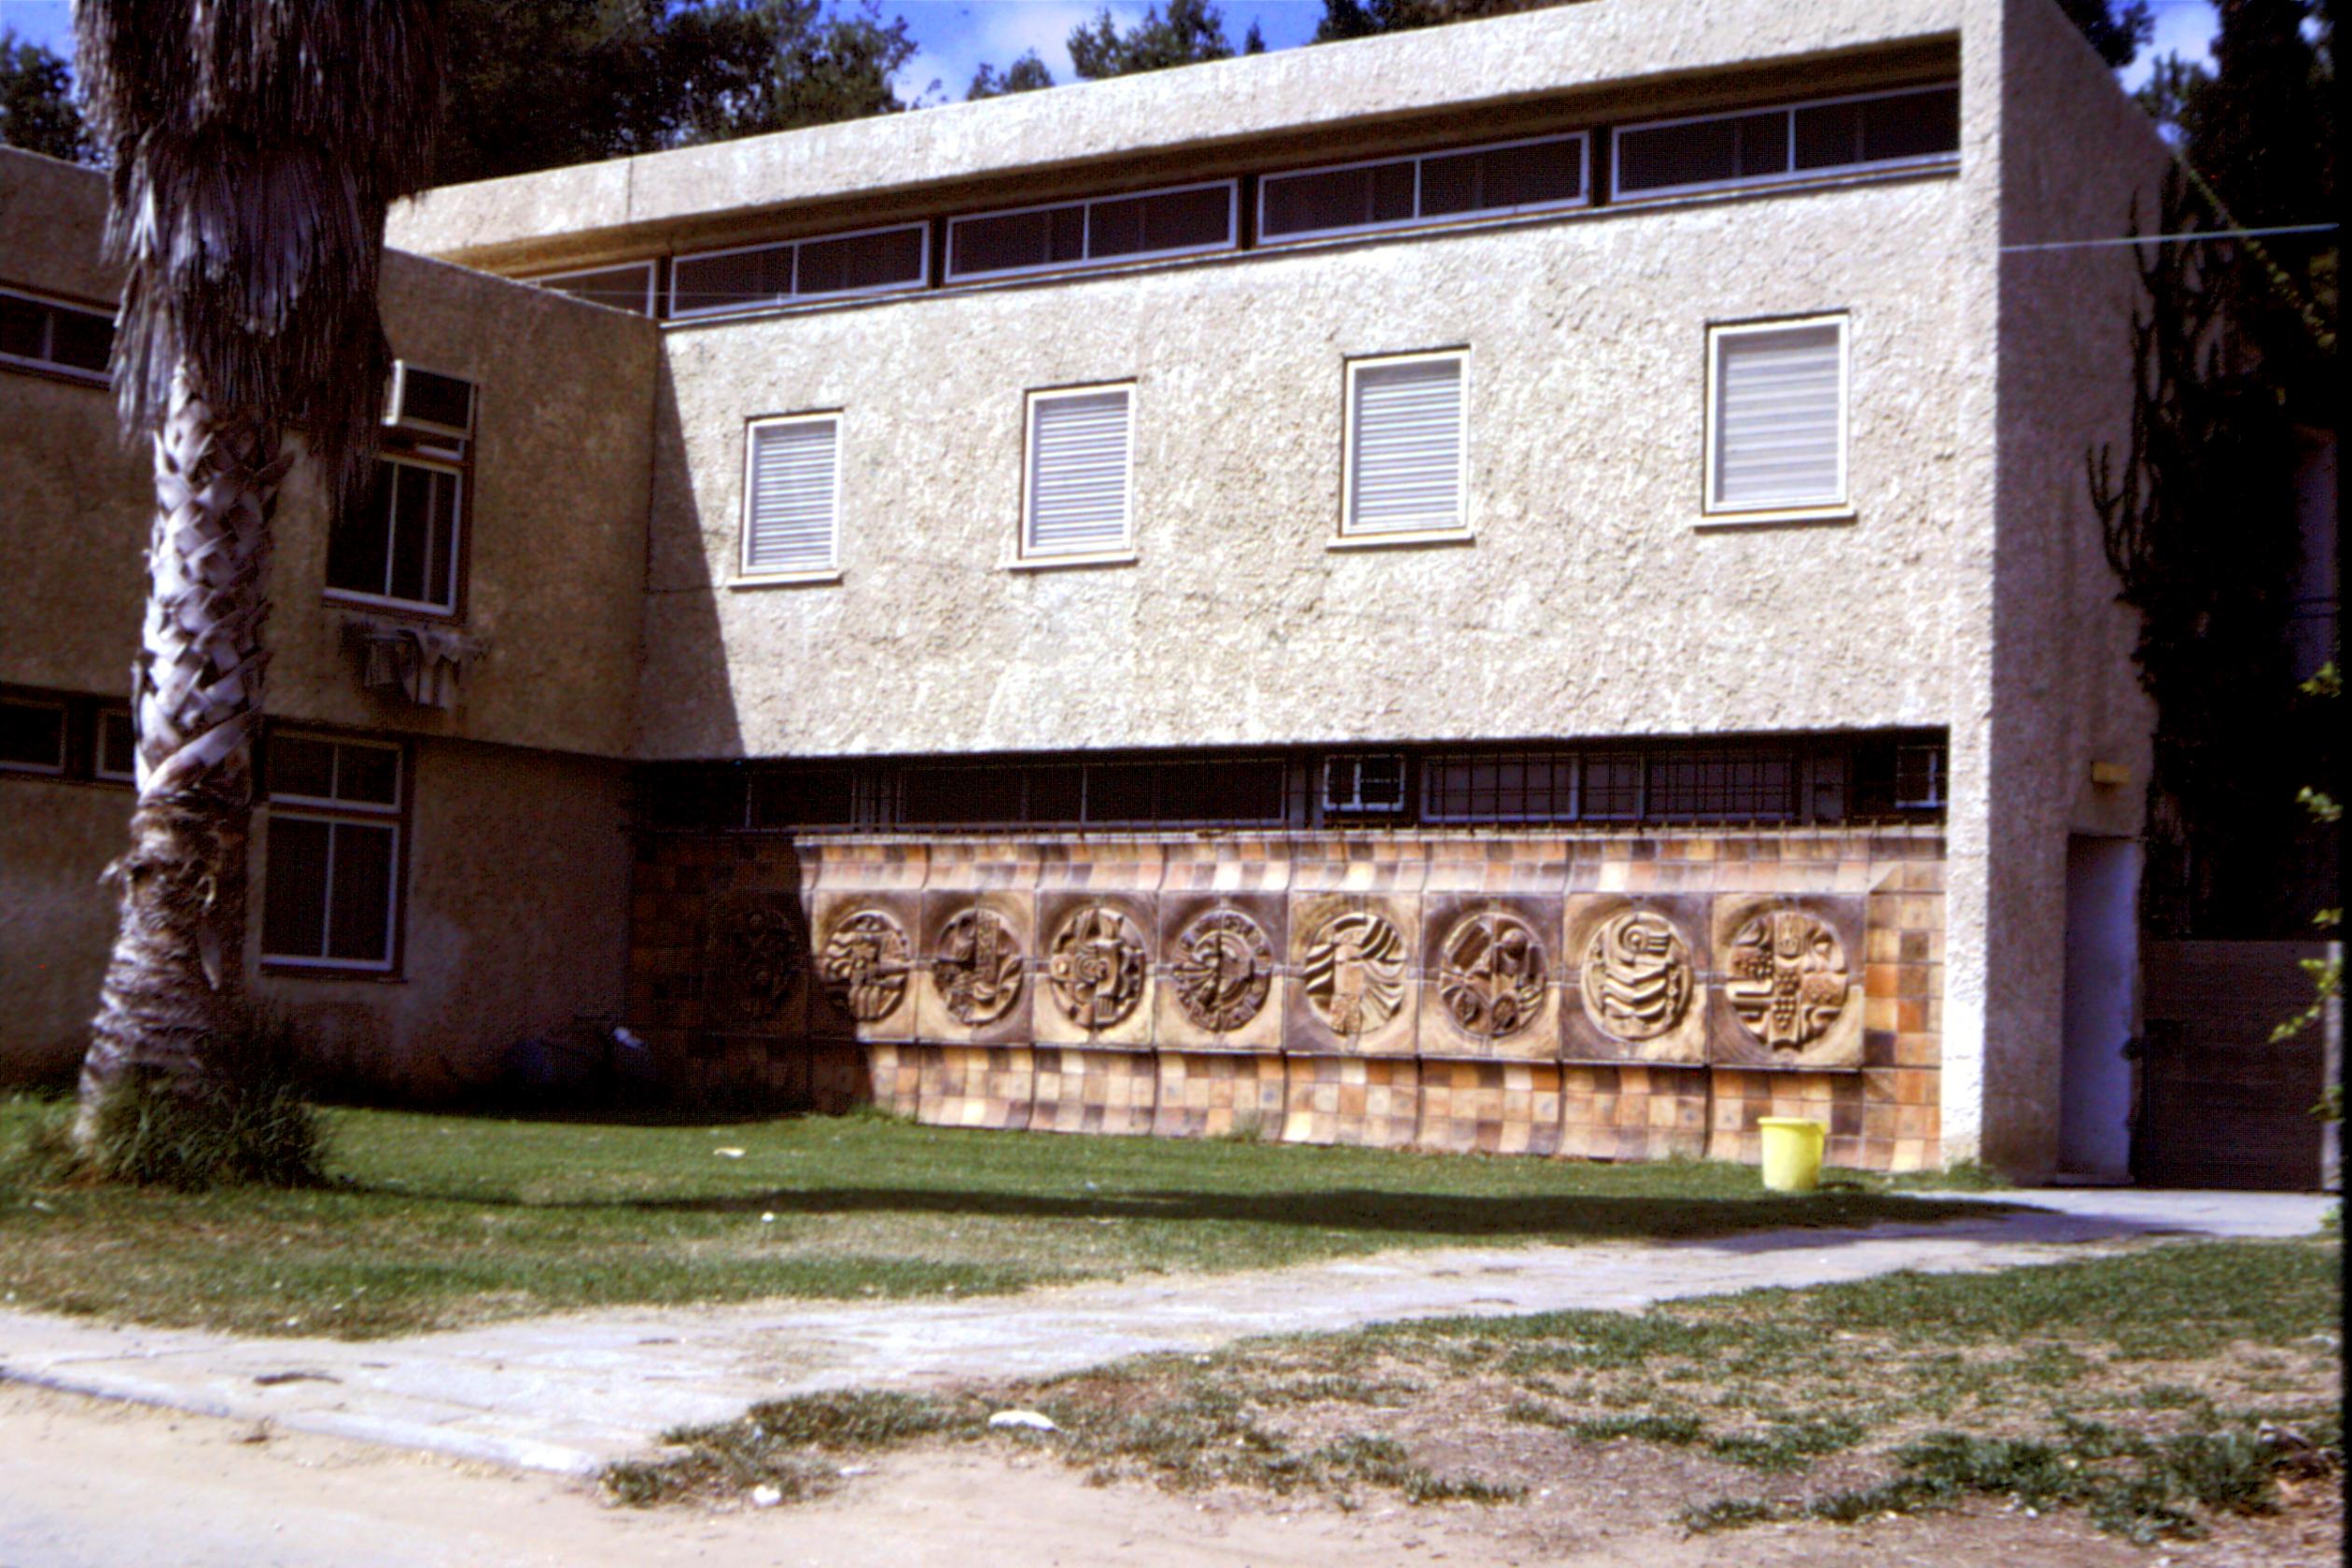 43473 - קיר קרמי של משה ס בנין המרפאה.jpg